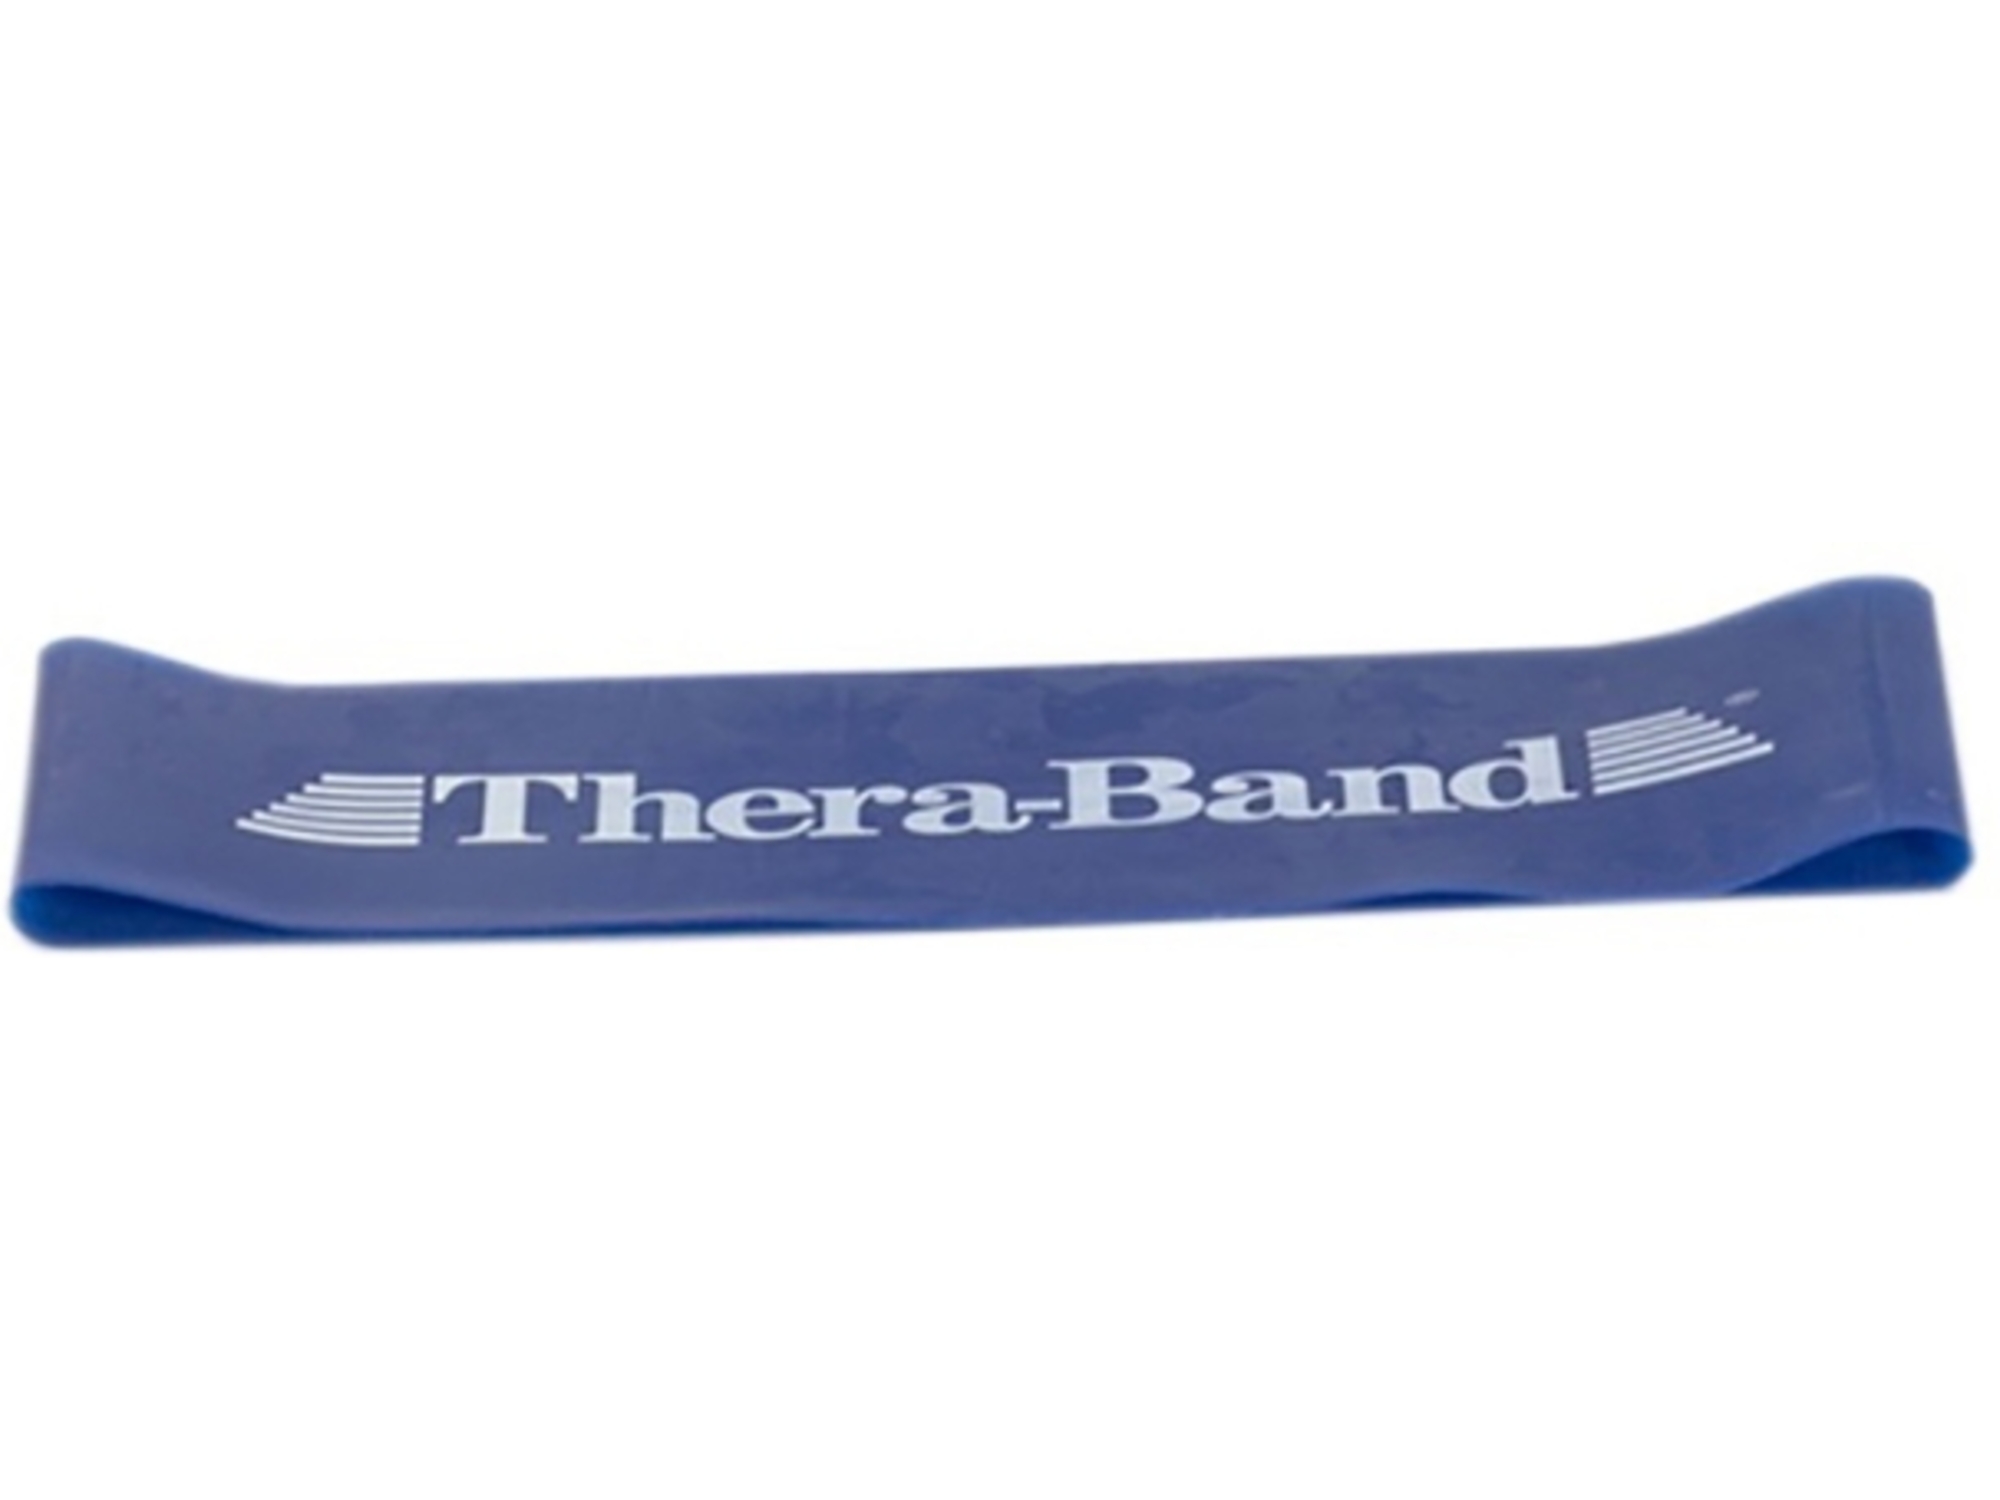 THERA-BAND elastični trak z zanko TB 20840, 20.5cm, srednje težak, moder